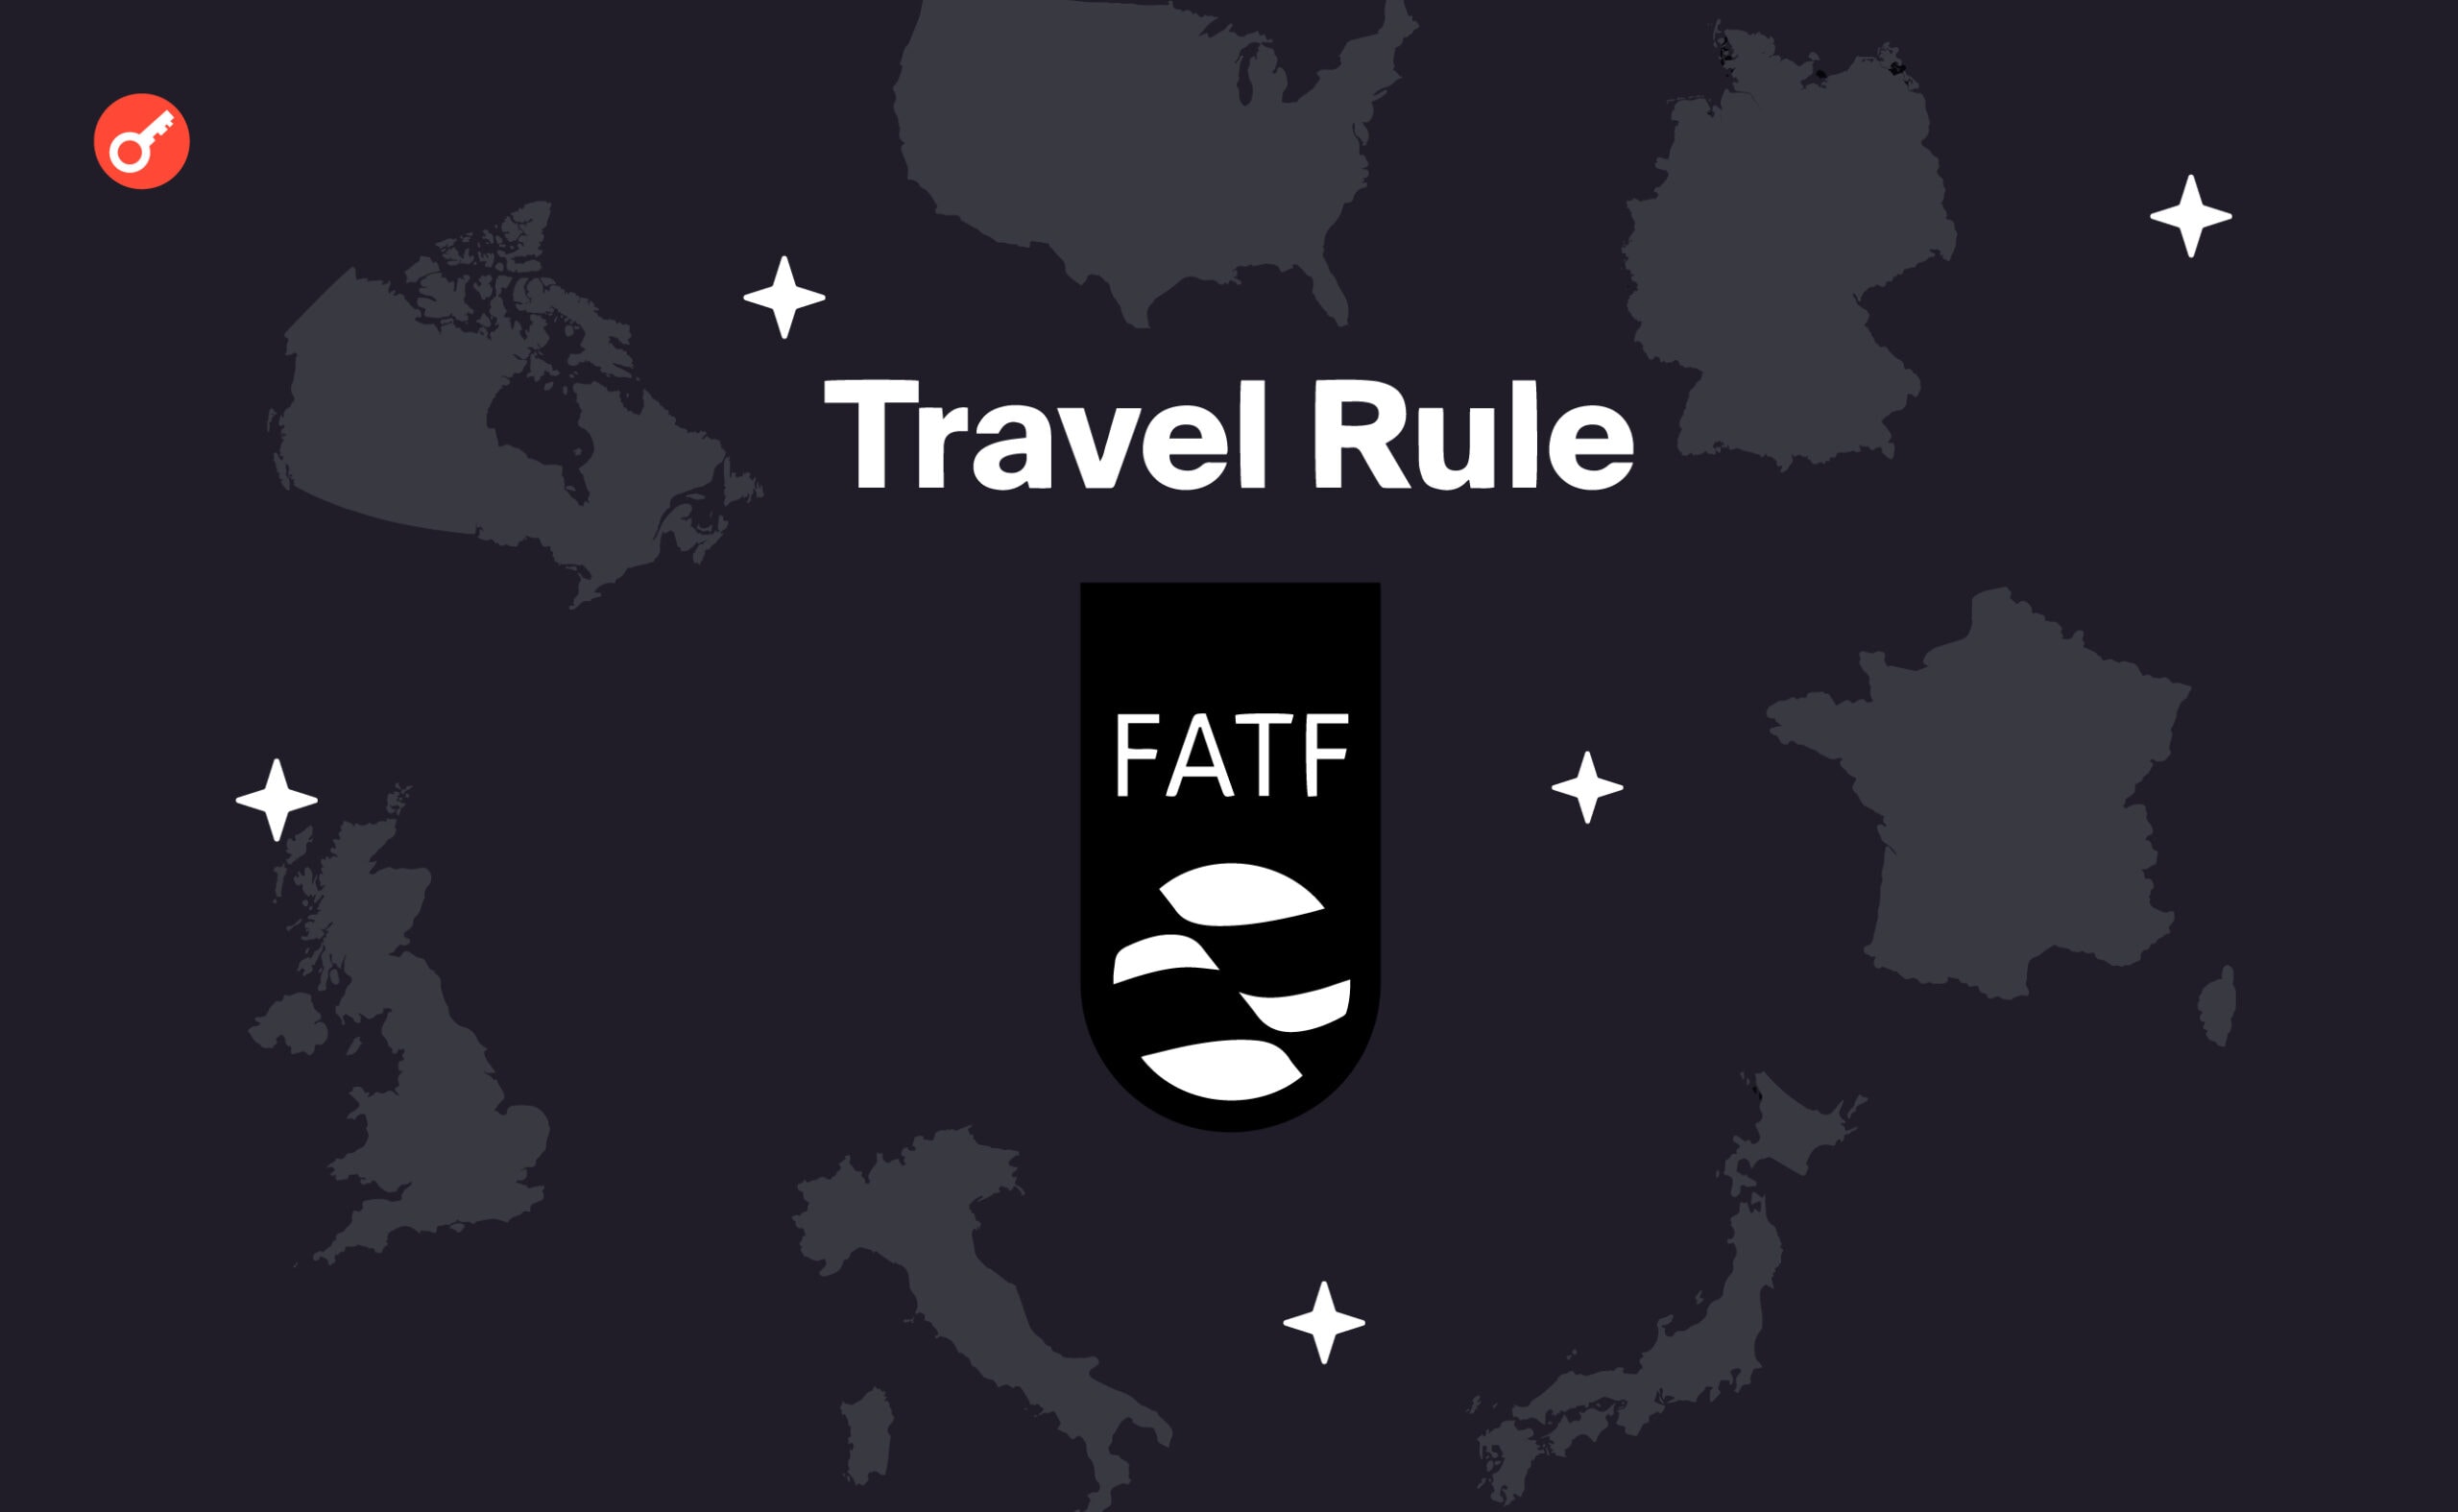 G7 настаивает на повсеместном внедрении «Travel Rule» от FATF. Заглавный коллаж новости.